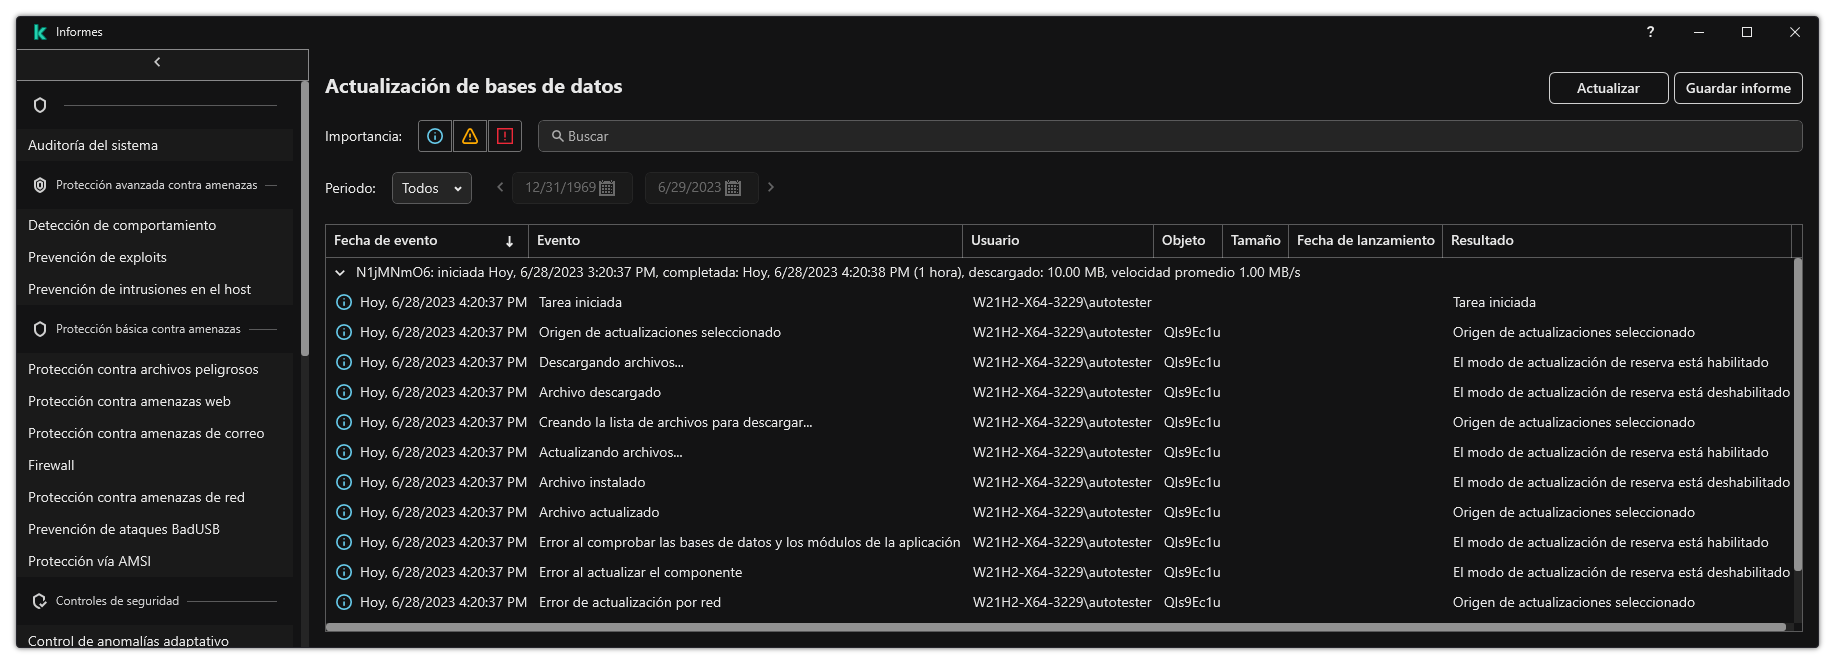 Una ventana con la lista de eventos en el informe. El usuario puede filtrar/ordenar eventos y guardar informes en un archivo.